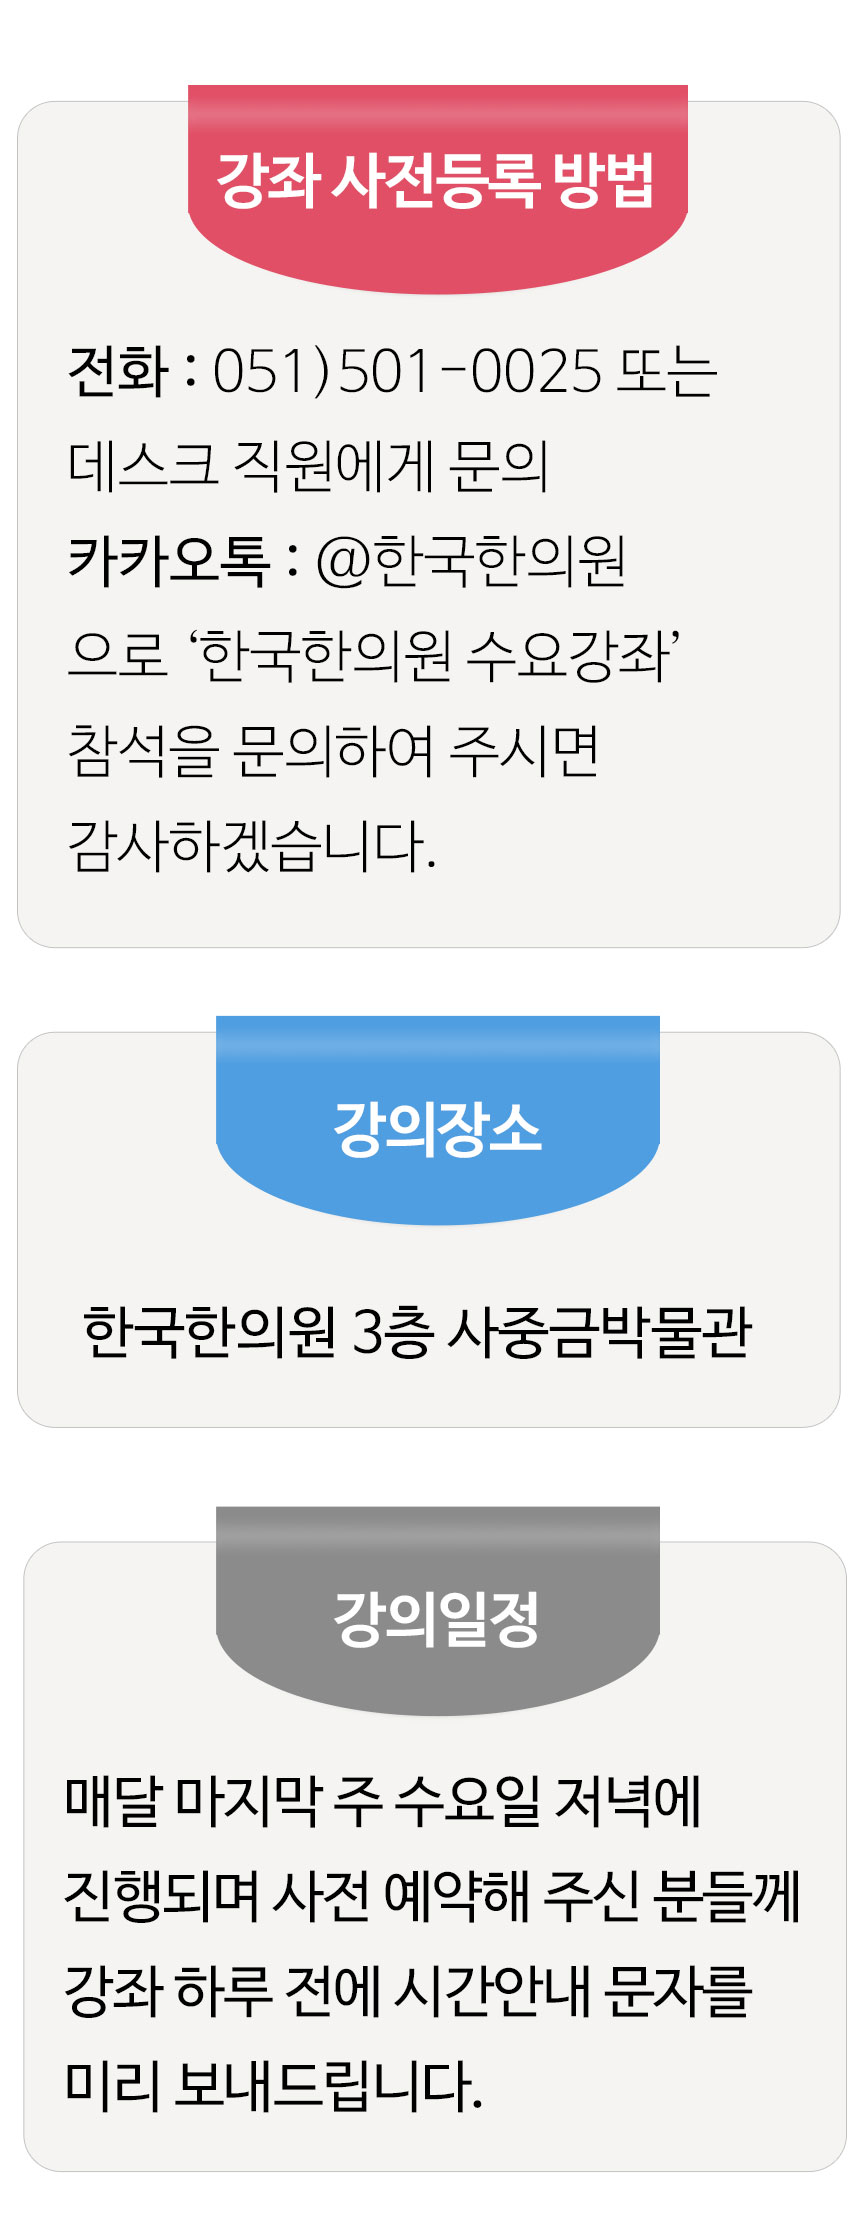 한국한의원, 부산 한국한의원, 부산 건강강, 무료건강강